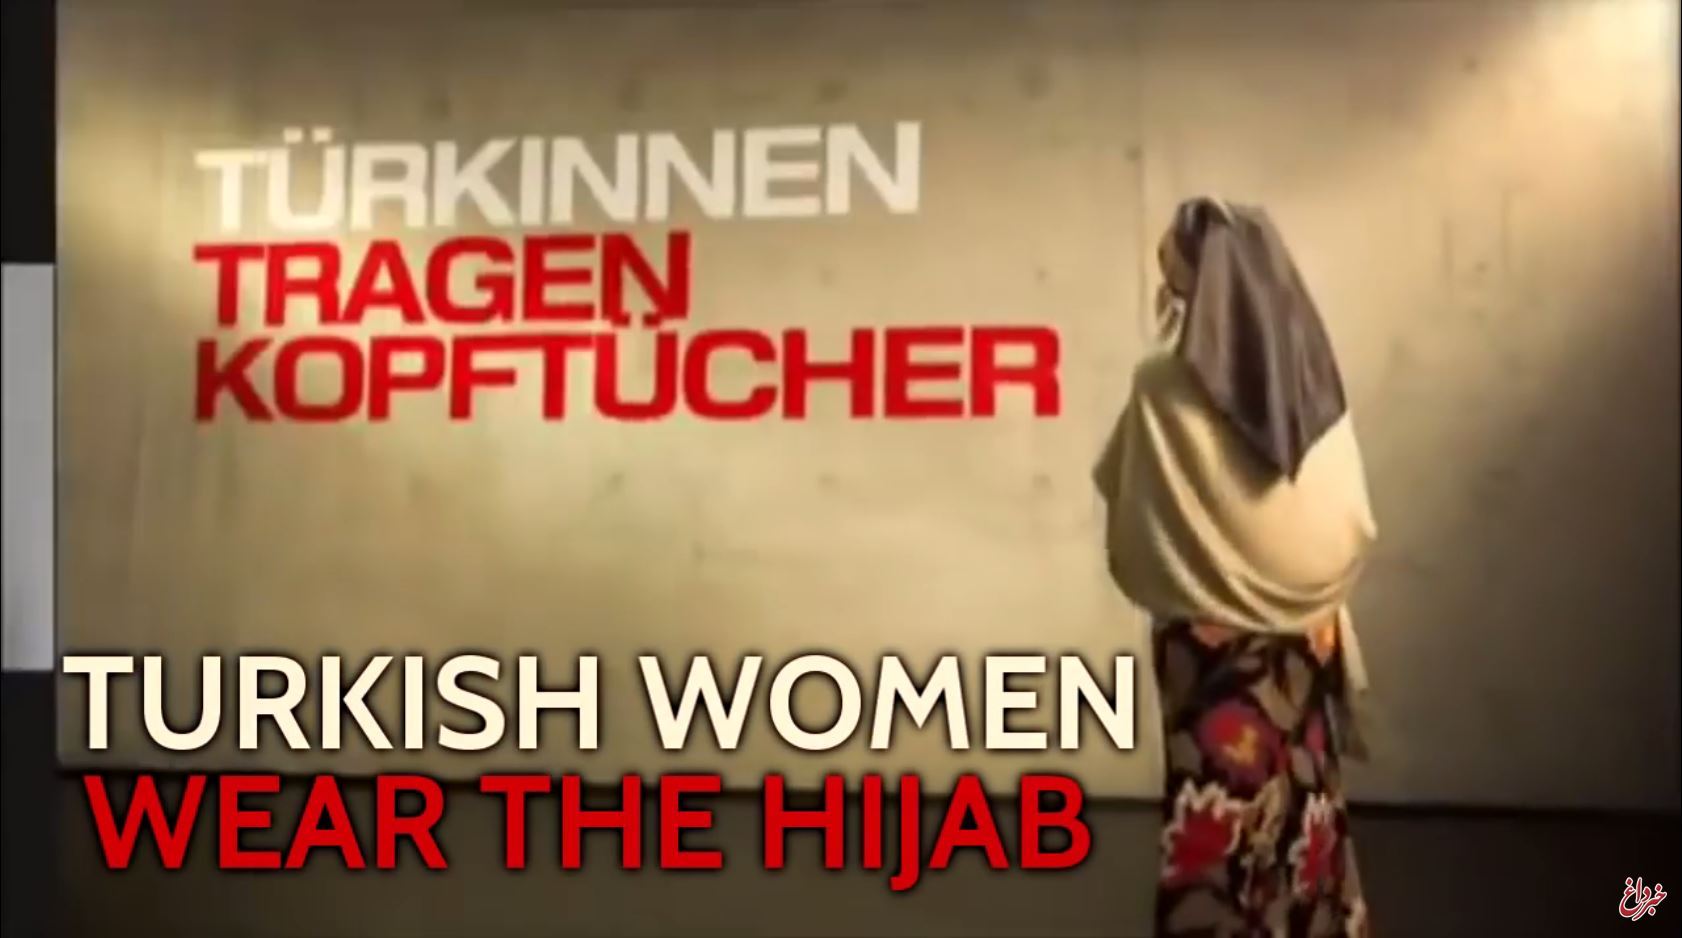 تبلیغ متفاوت و جنجال برانگیز حجاب با خانم آلمانی! +عکس